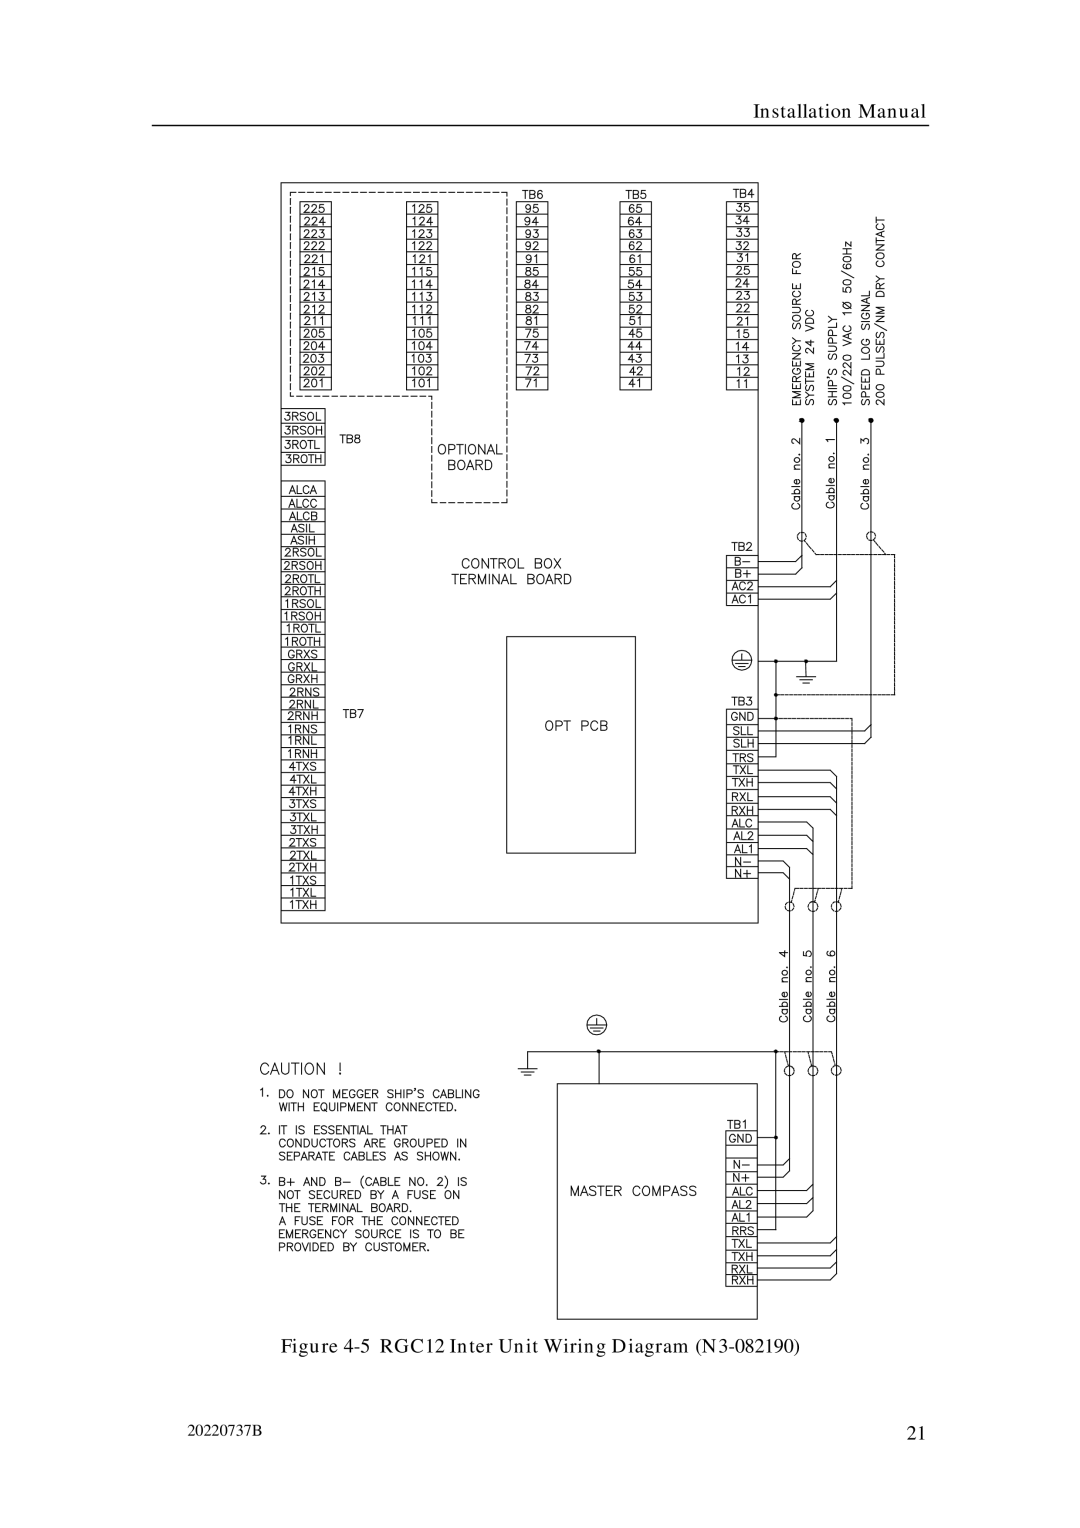 Simrad manual RGC12 Inter Unit Wiring Diagram N3-082190 